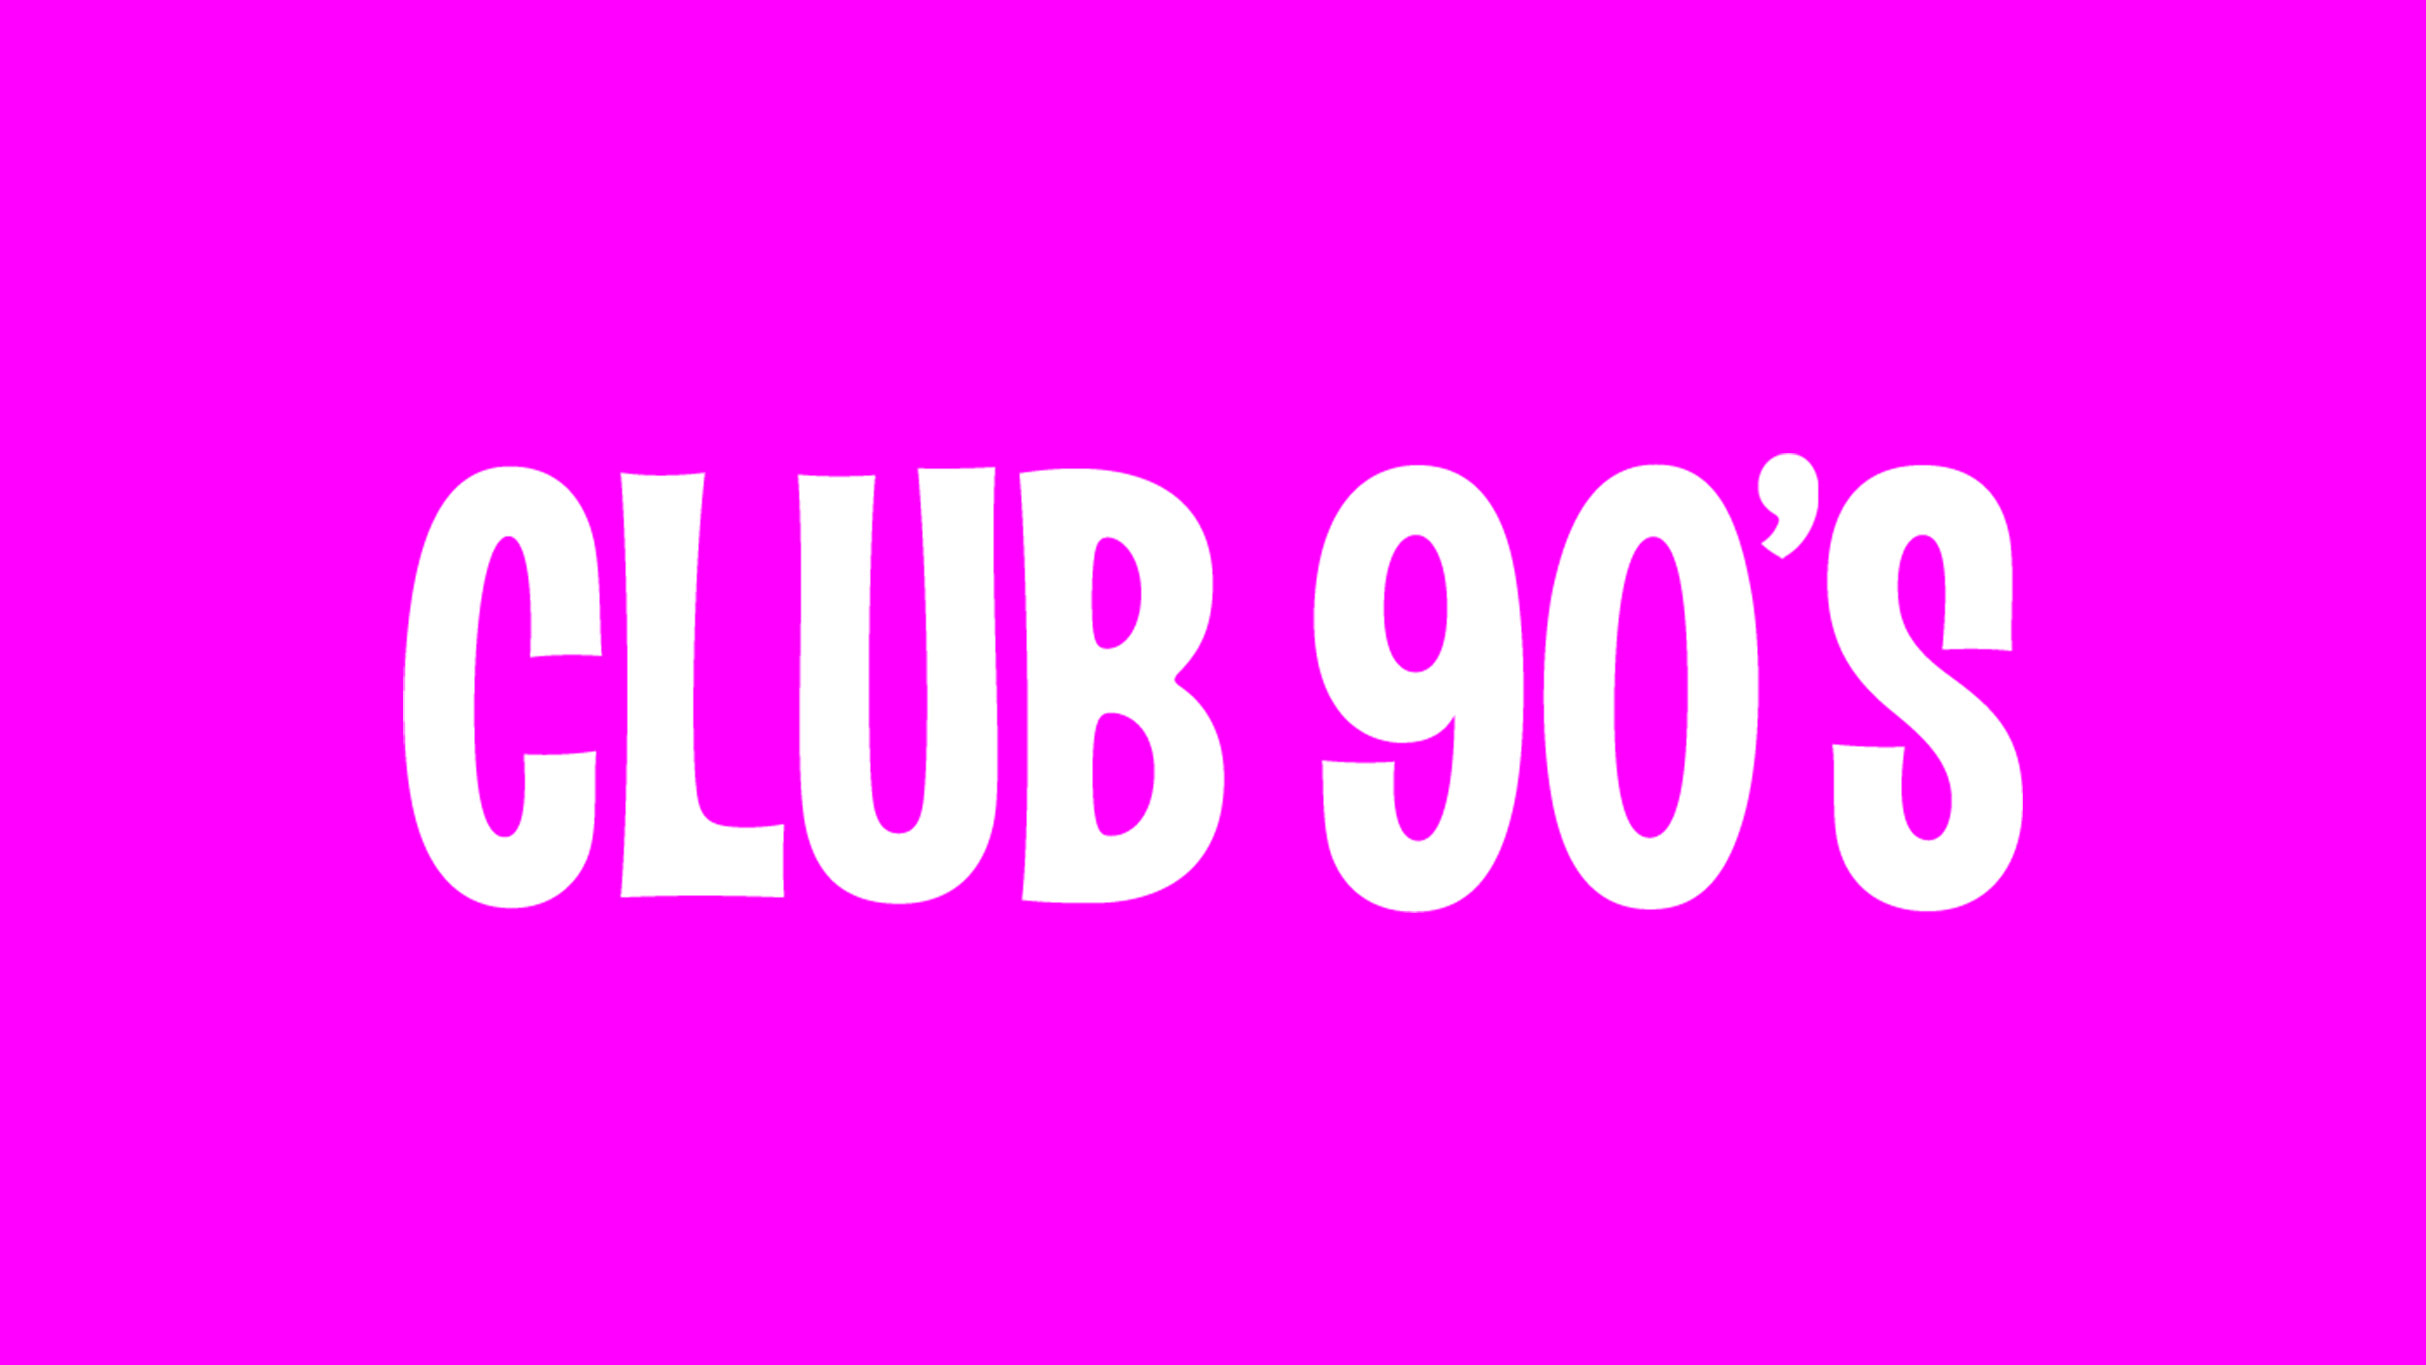 Club 90s: One Direction Night @ Rialto Theatre